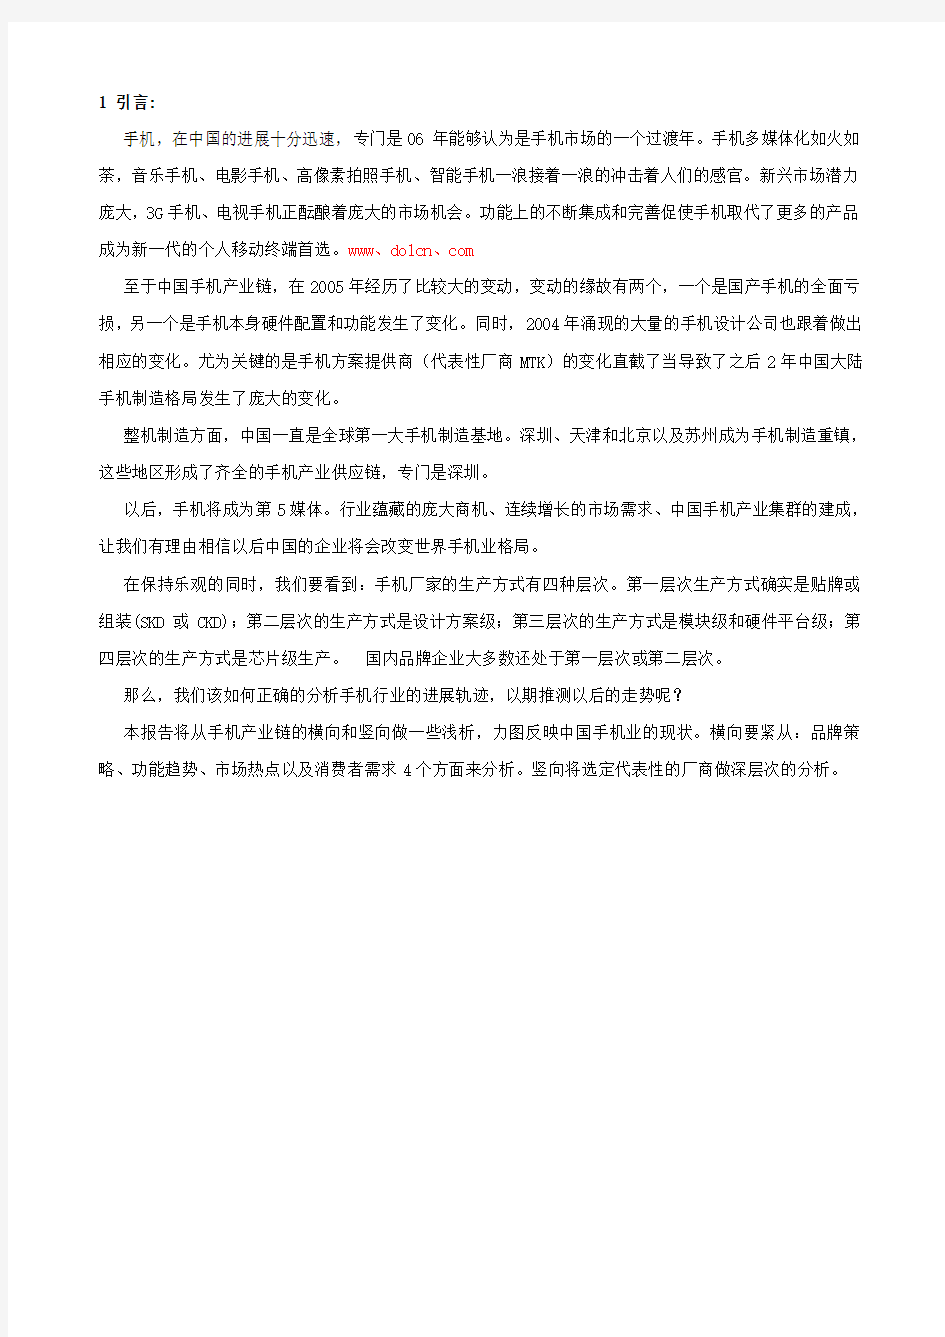 中国手机产业发展报告